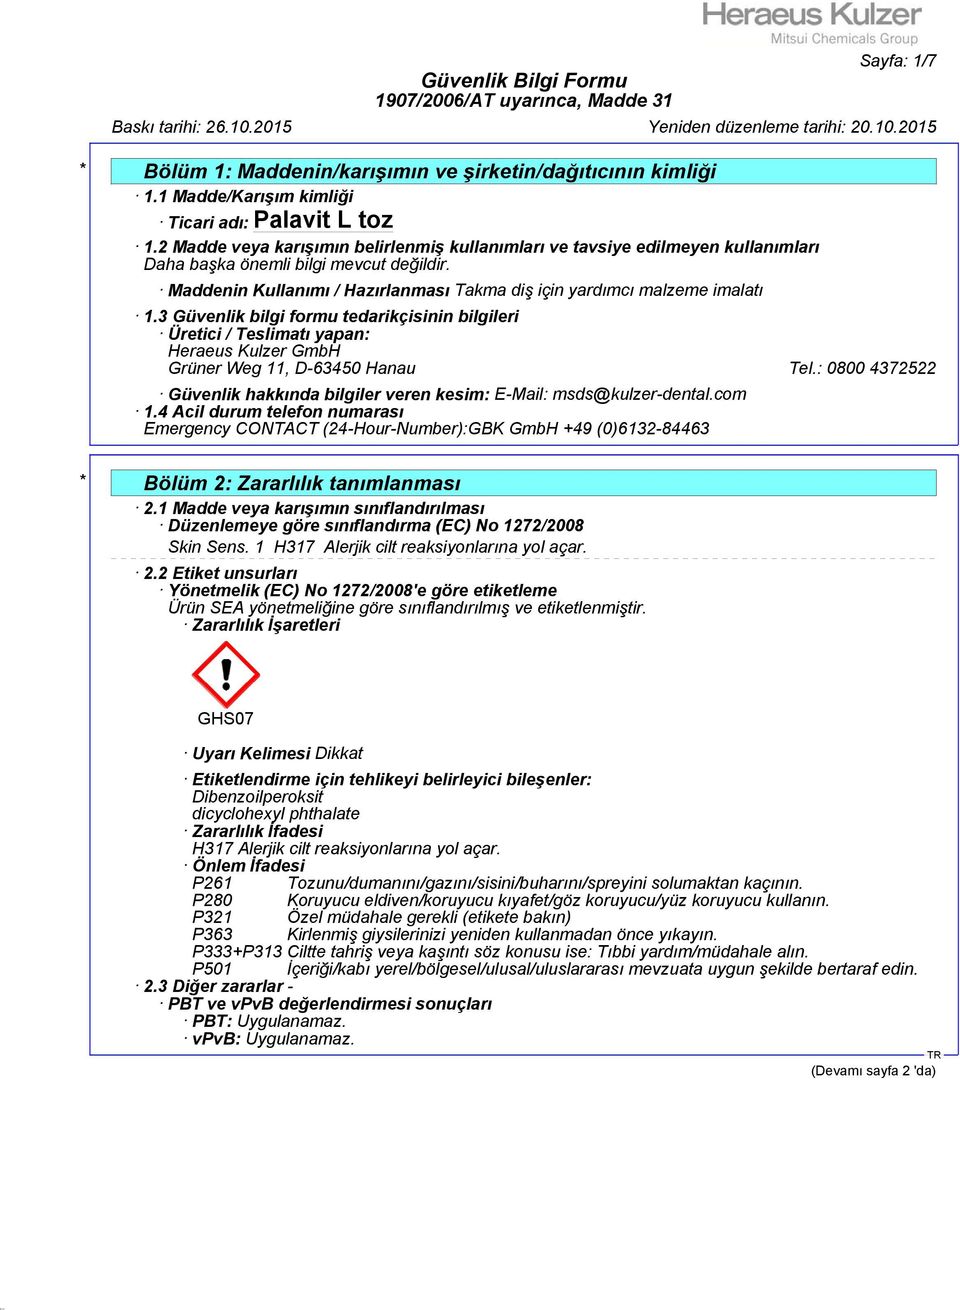 3 Güvenlik bilgi formu tedarikçisinin bilgileri Üretici / Teslimatı yapan: Heraeus Kulzer GmbH Grüner Weg 11, D-63450 Hanau Tel.